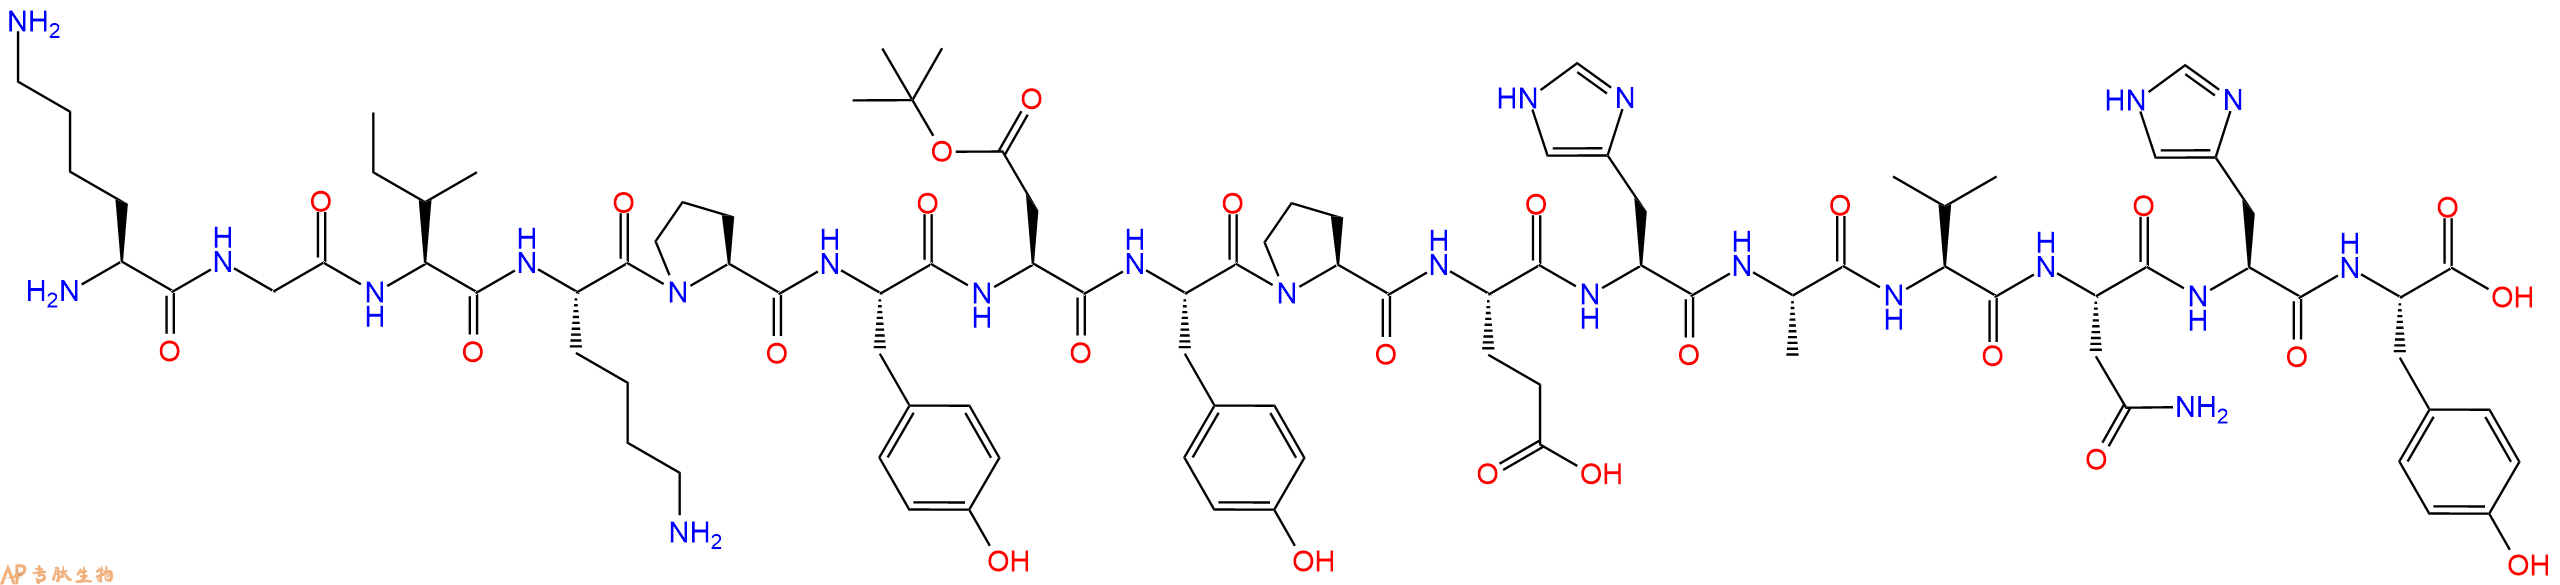 专肽生物产品H2N-Lys-Gly-Ile-Lys-Pro-Tyr-Asp(OtBu)-Tyr-Pro-Glu-